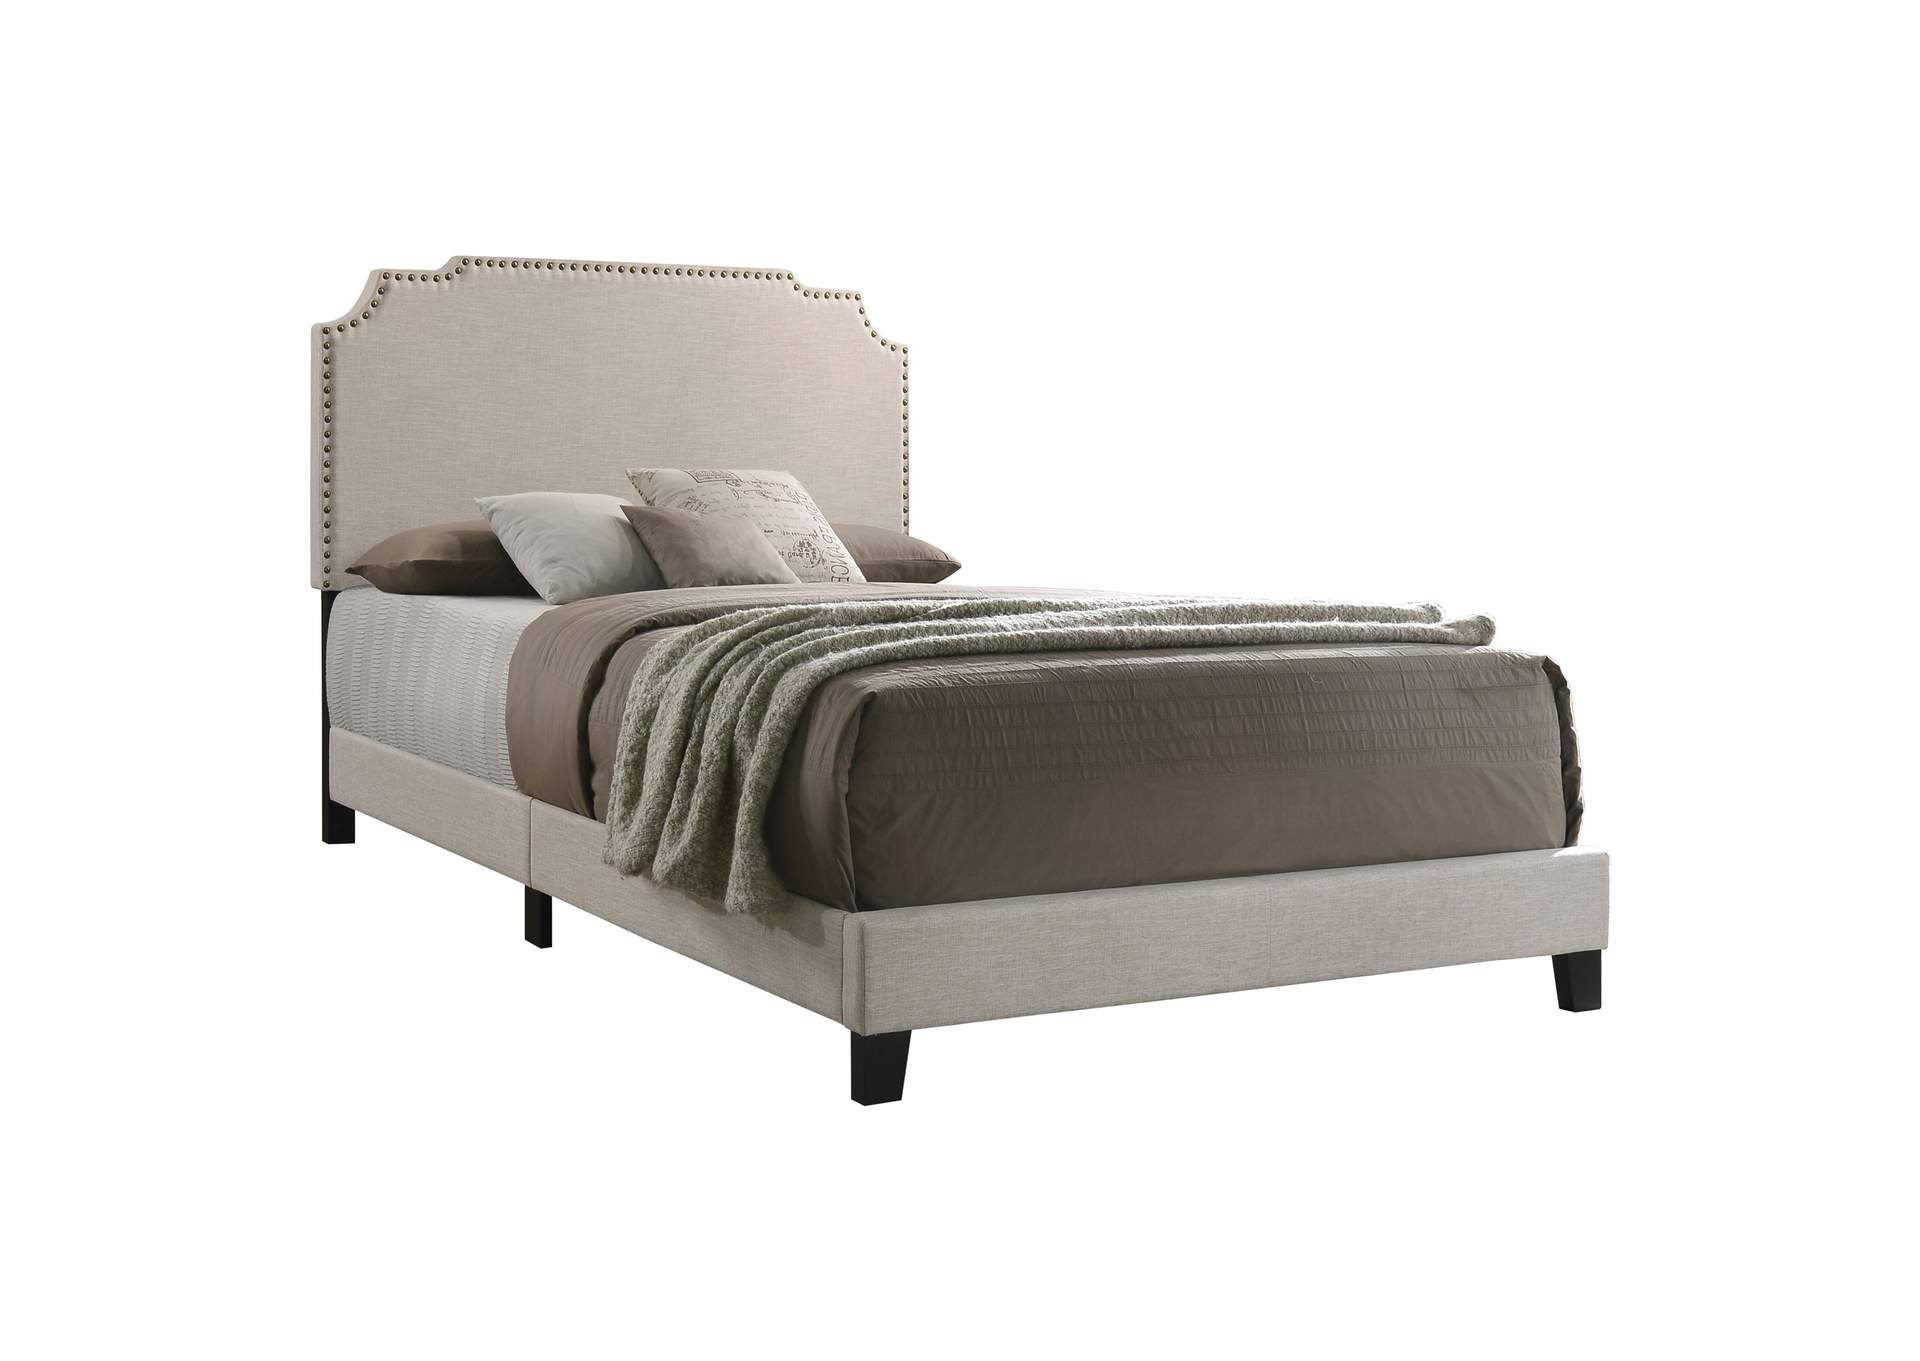 Tamarac Upholstered Nailhead Eastern King Bed Beige,Coaster Furniture